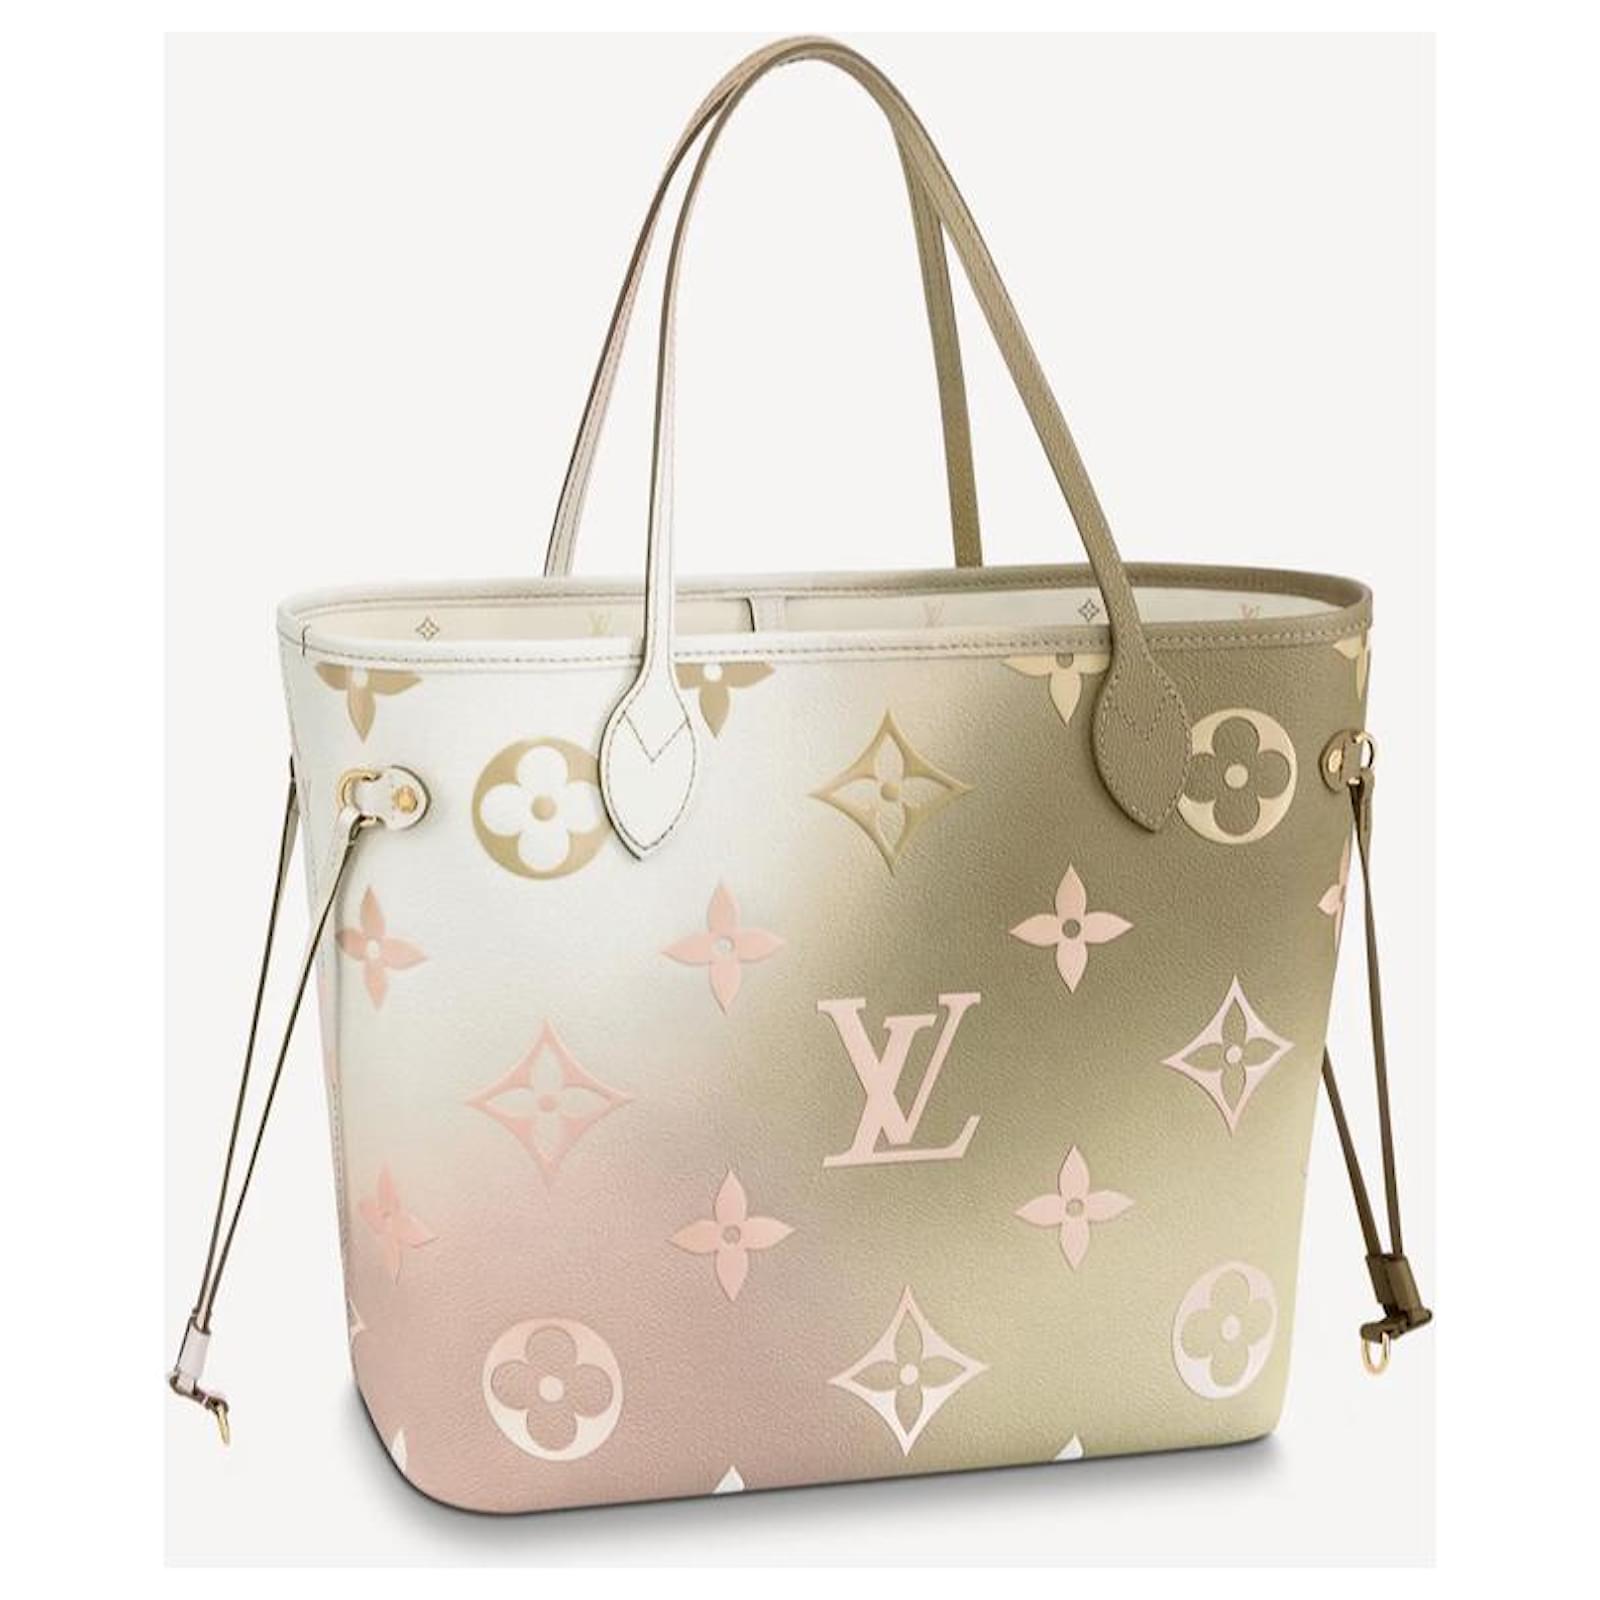 Louis Vuitton tiene los bolsos perfectos para San Valentín